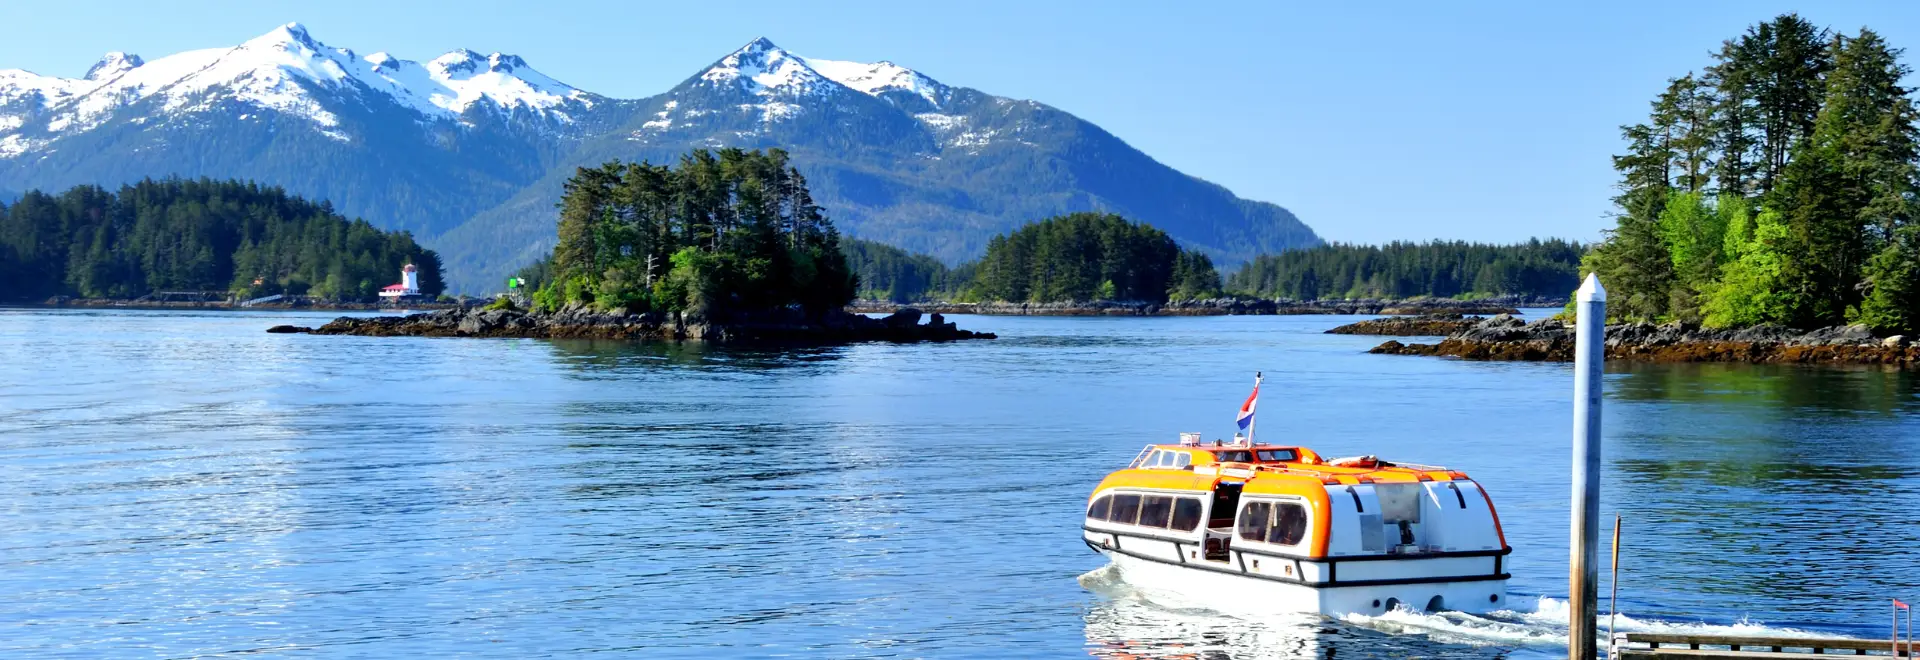 Vancouver şi Croazieră în Alaska